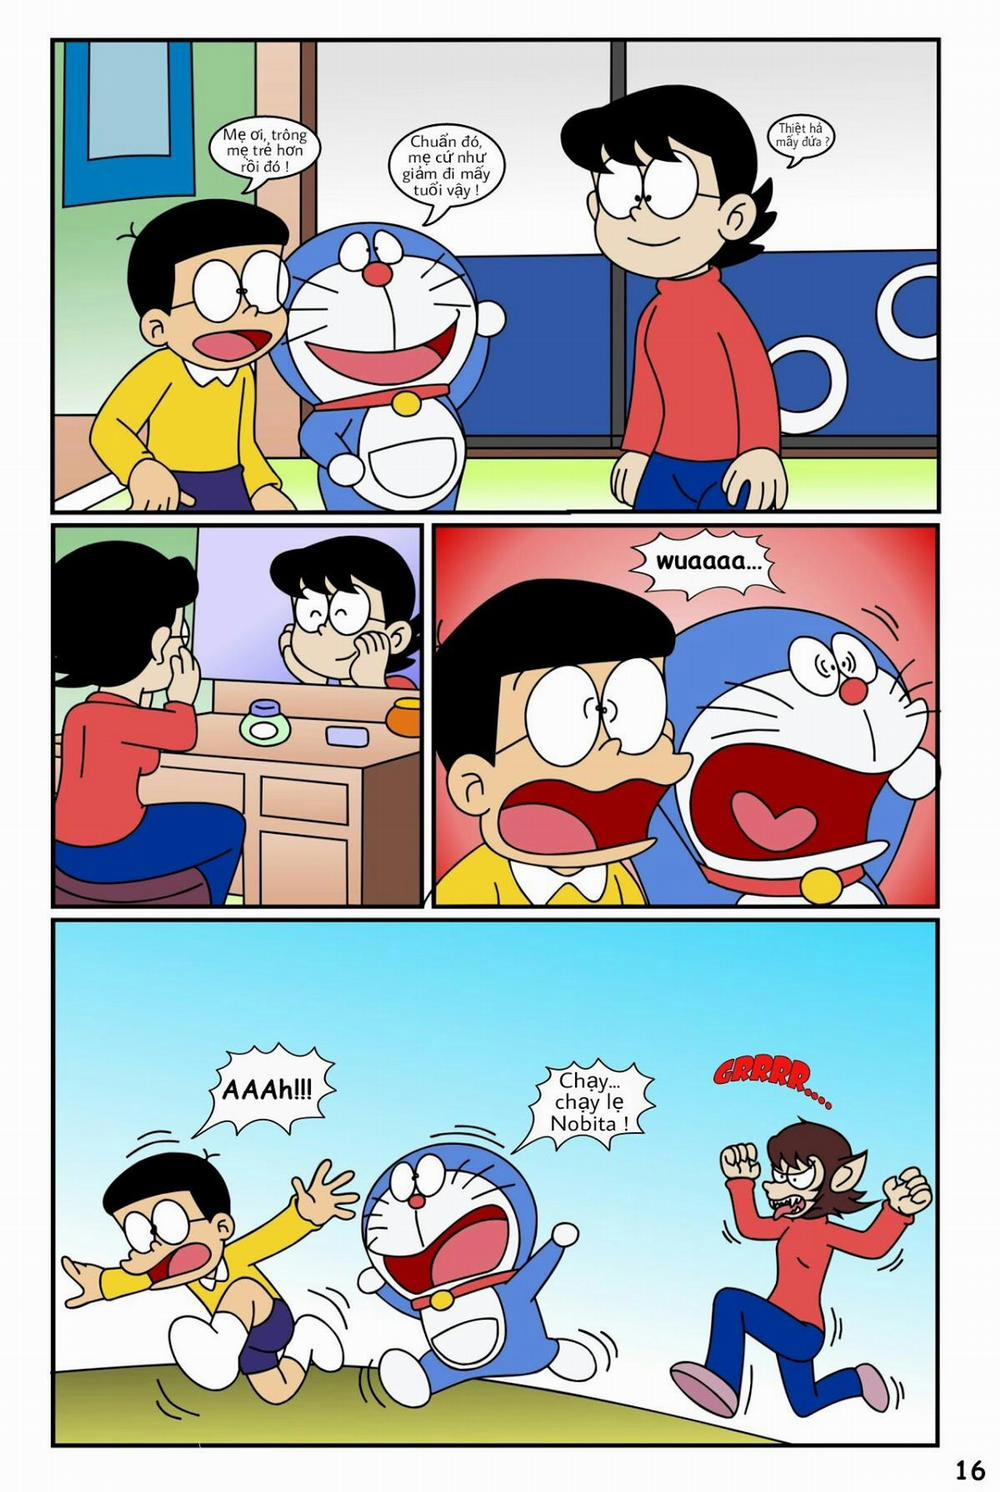 Tuyển Tập Doraemon Doujinshi 18+ Chương 19 Kem ch s i 1 Trang 18